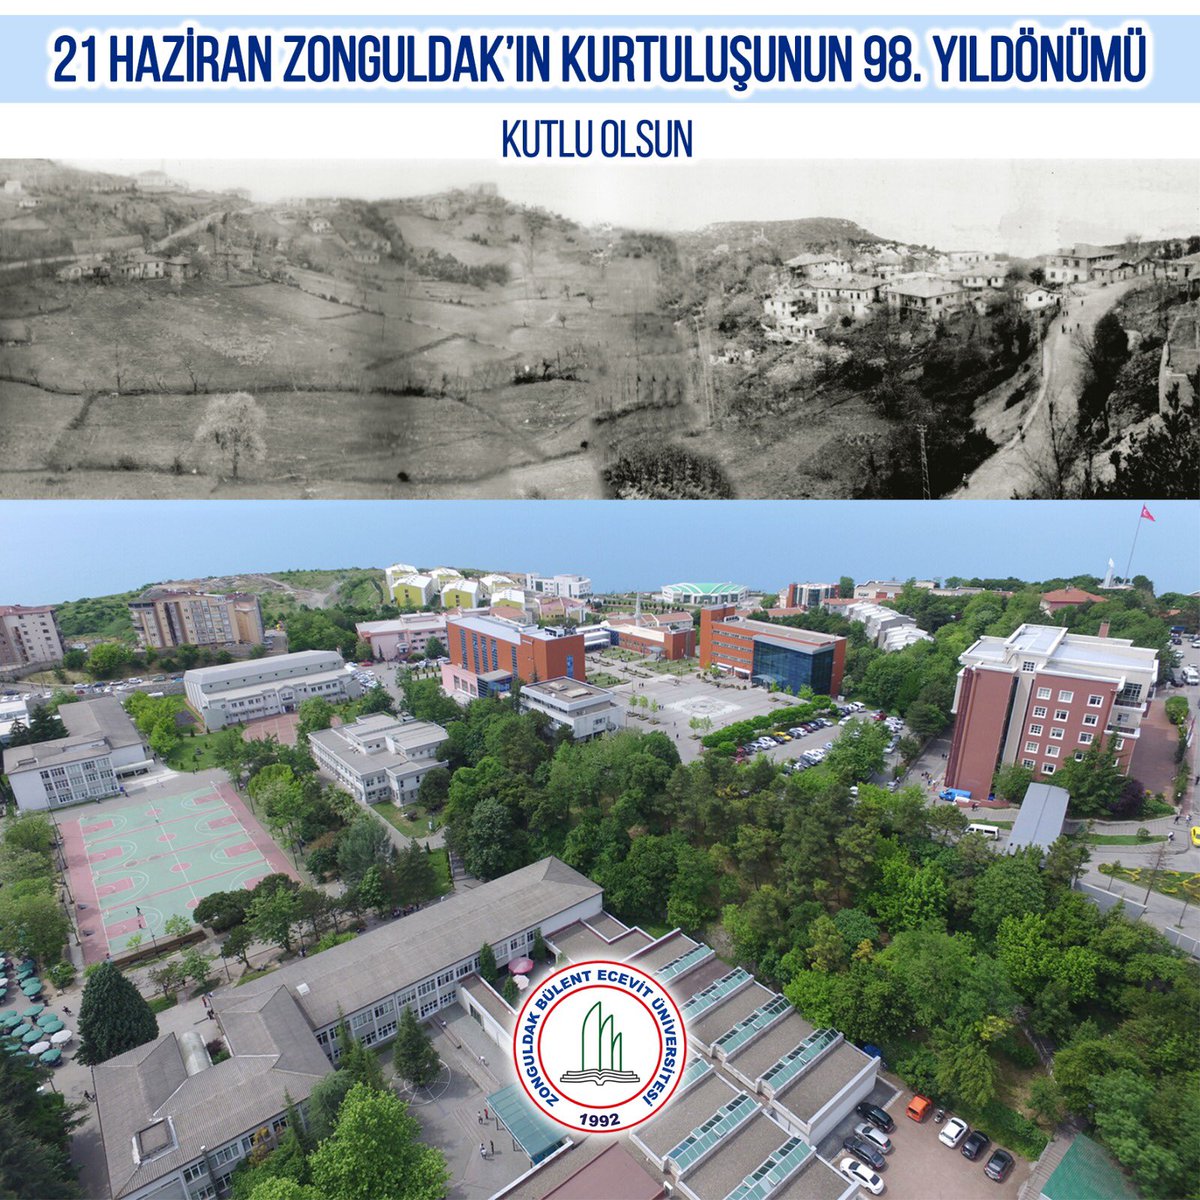 21 Haziran Zonguldak’ın Kurtuluşunun 98. Yıldönümü Kutlu Olsun
#zonguldakbeü https://t.co/5Pe7E3C6Sq